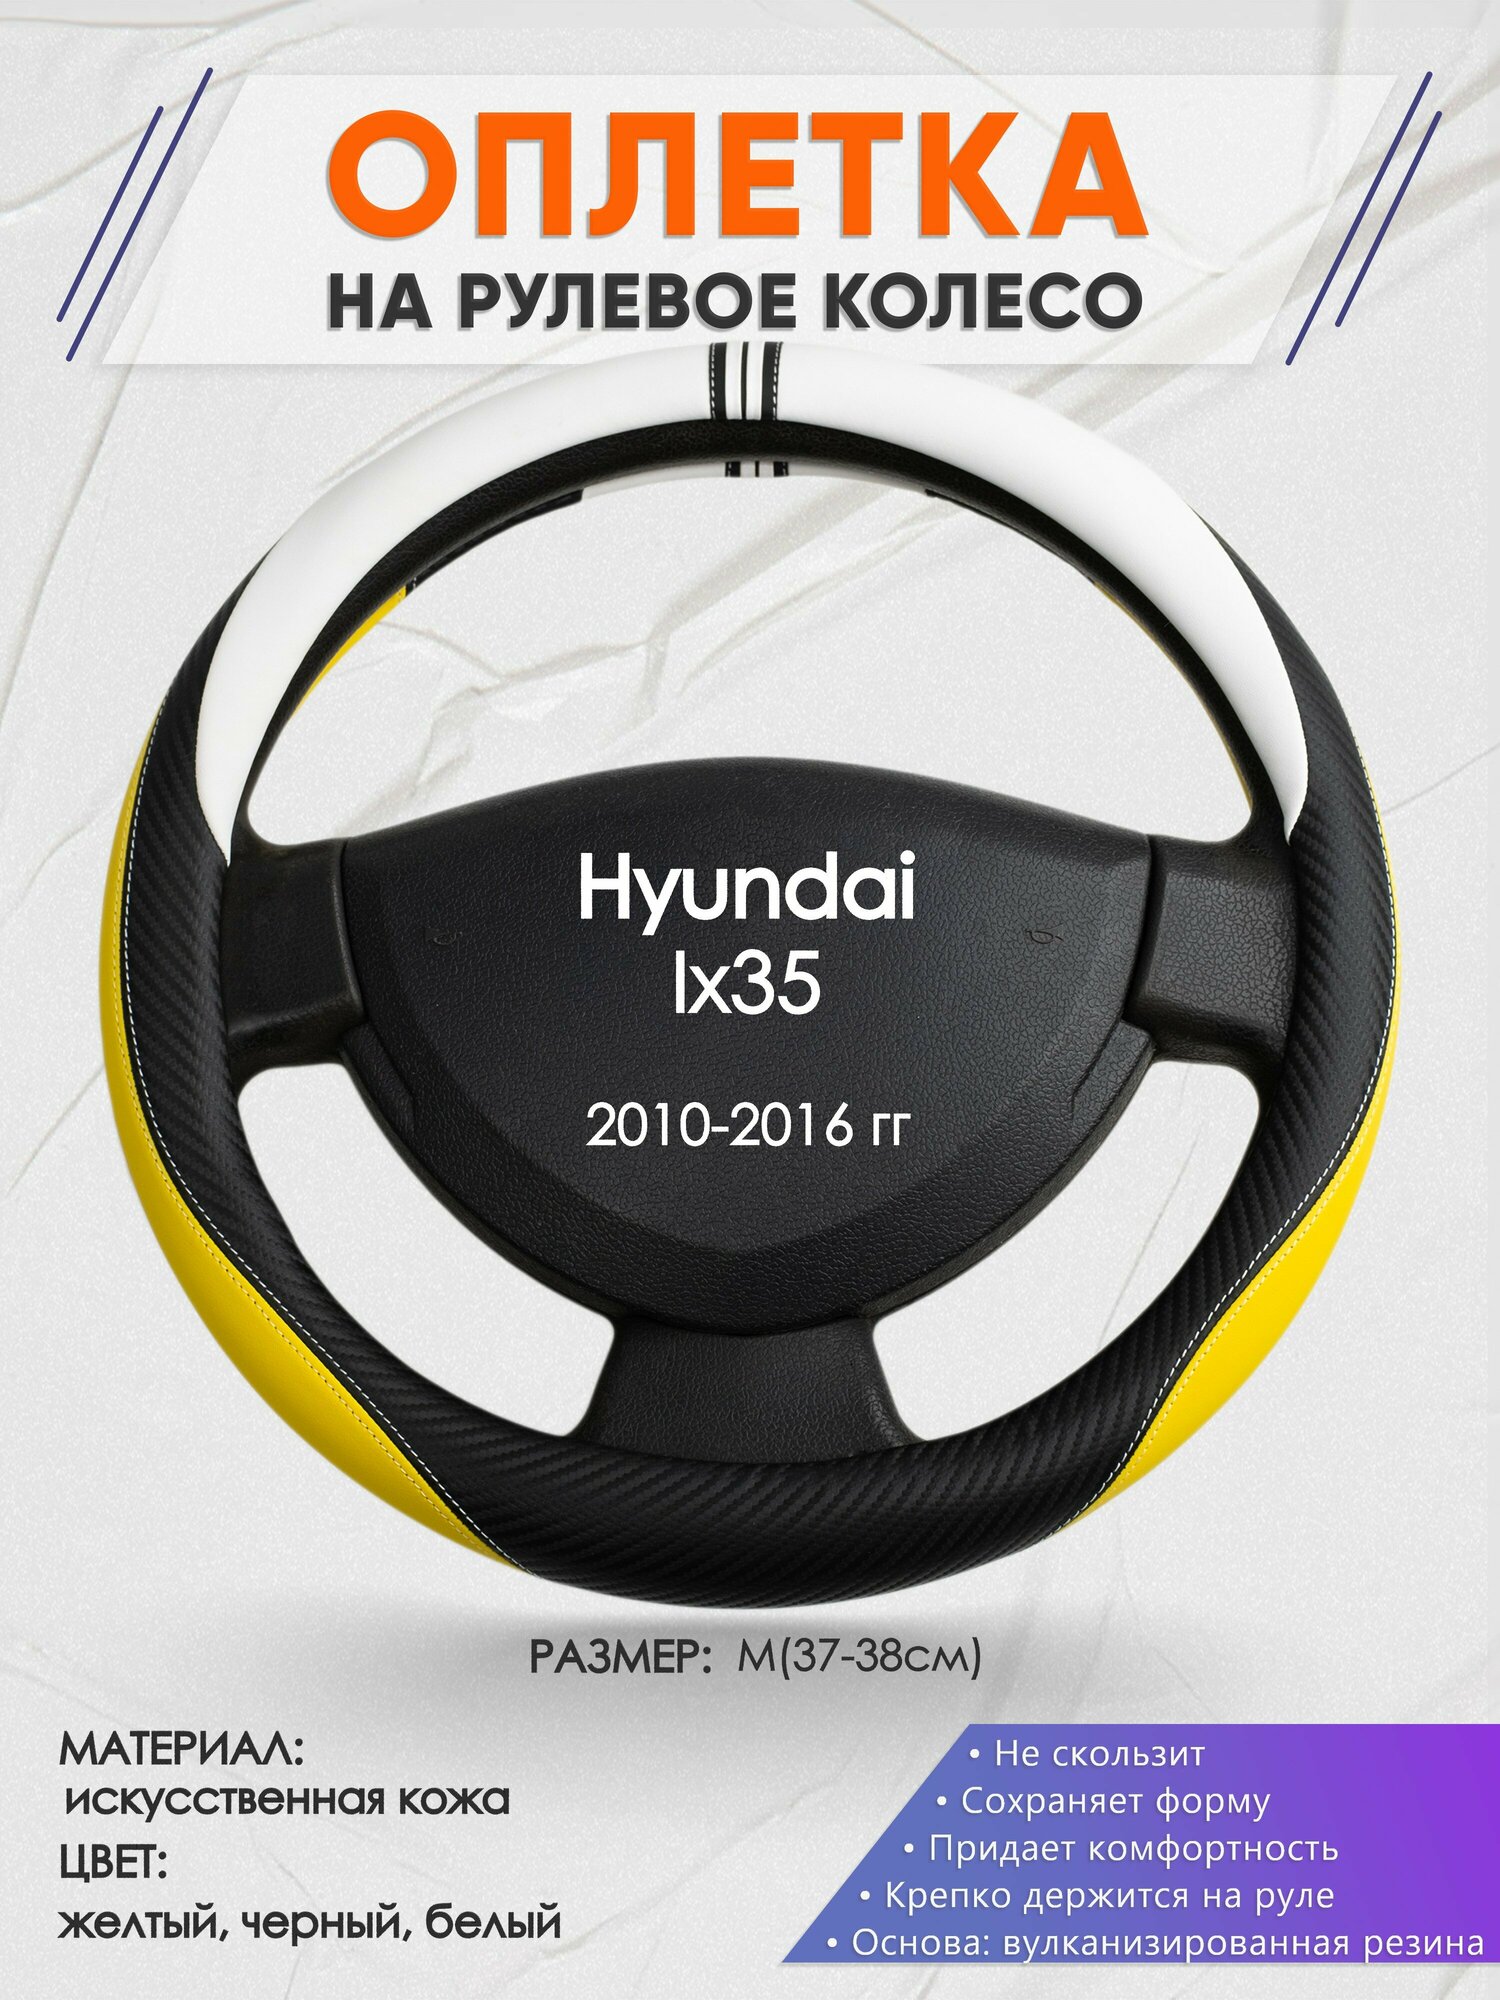 Оплетка на руль для Hyundai Ix35 (Хендай Их35) 2010-2016, M(37-38см), Искусственная кожа 56